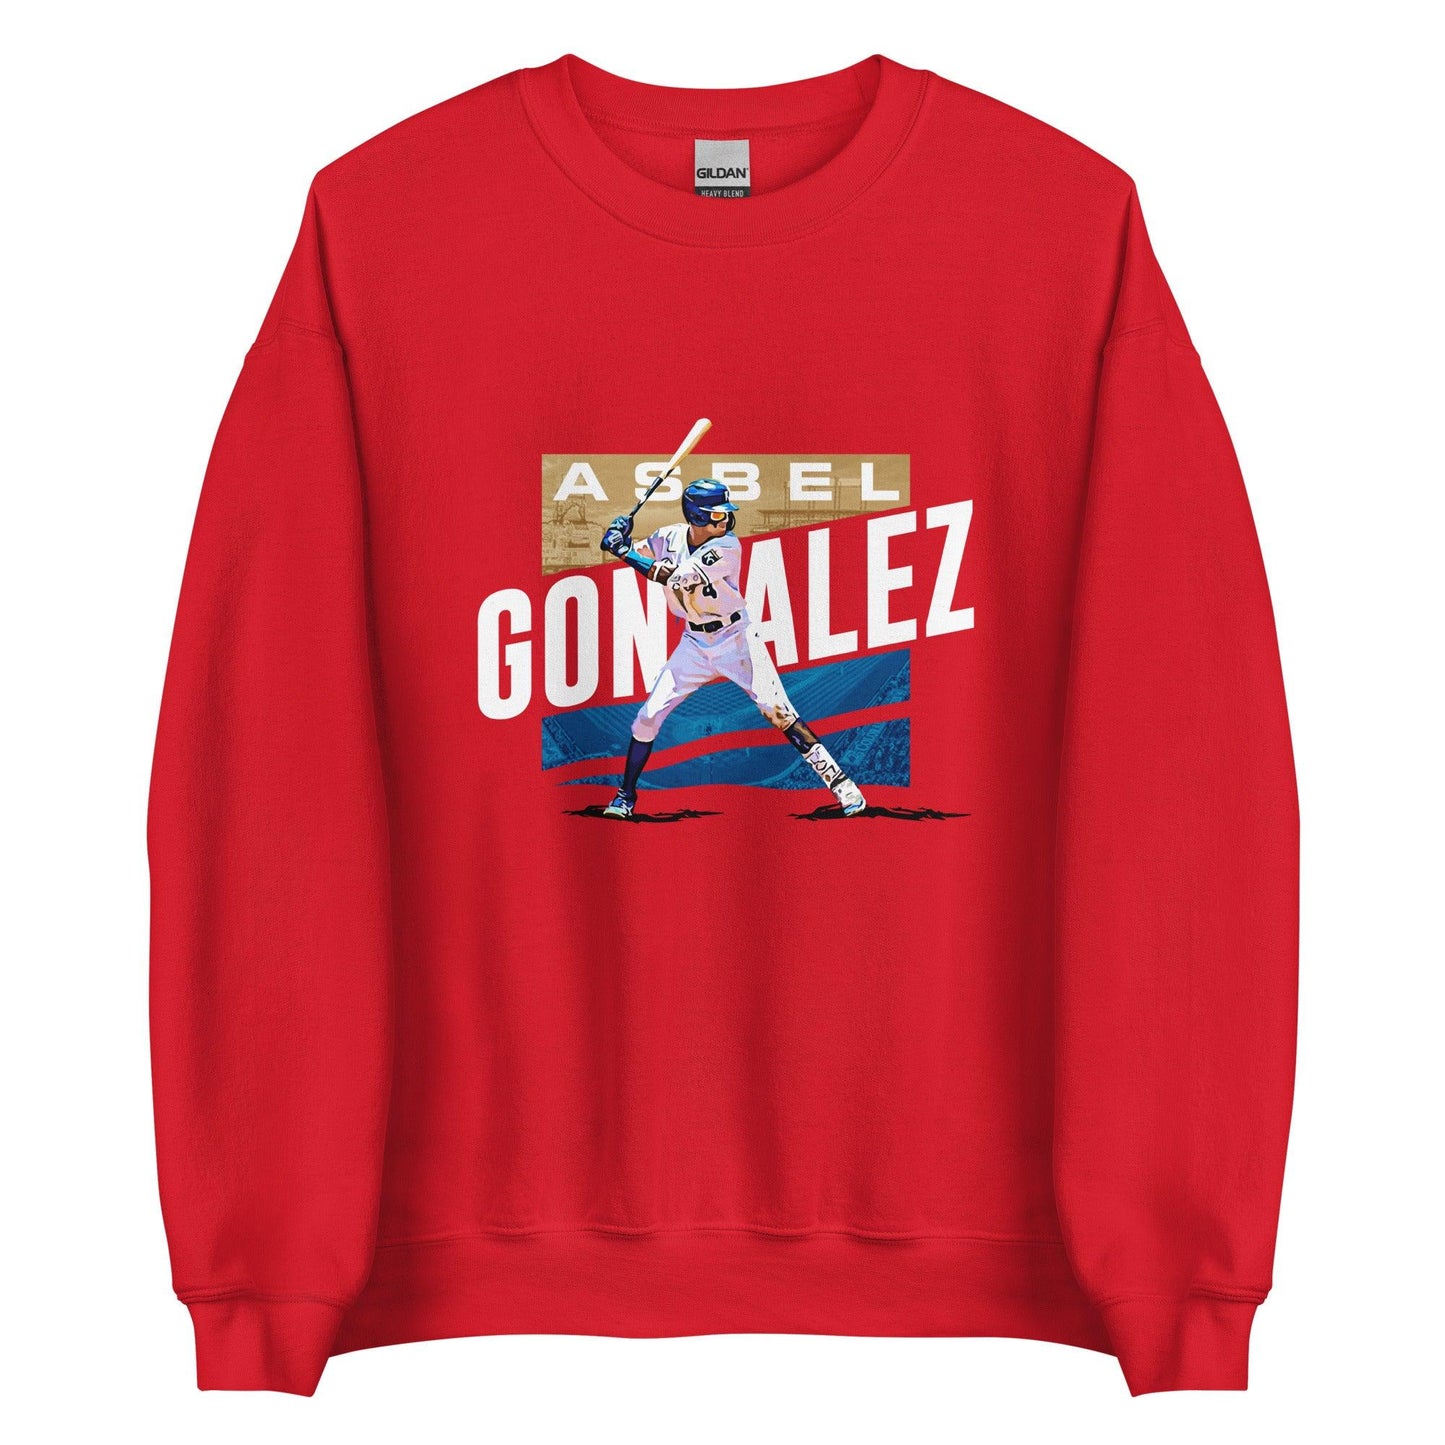 Asbel Gonzalez "Gameday" Sweatshirt - Fan Arch